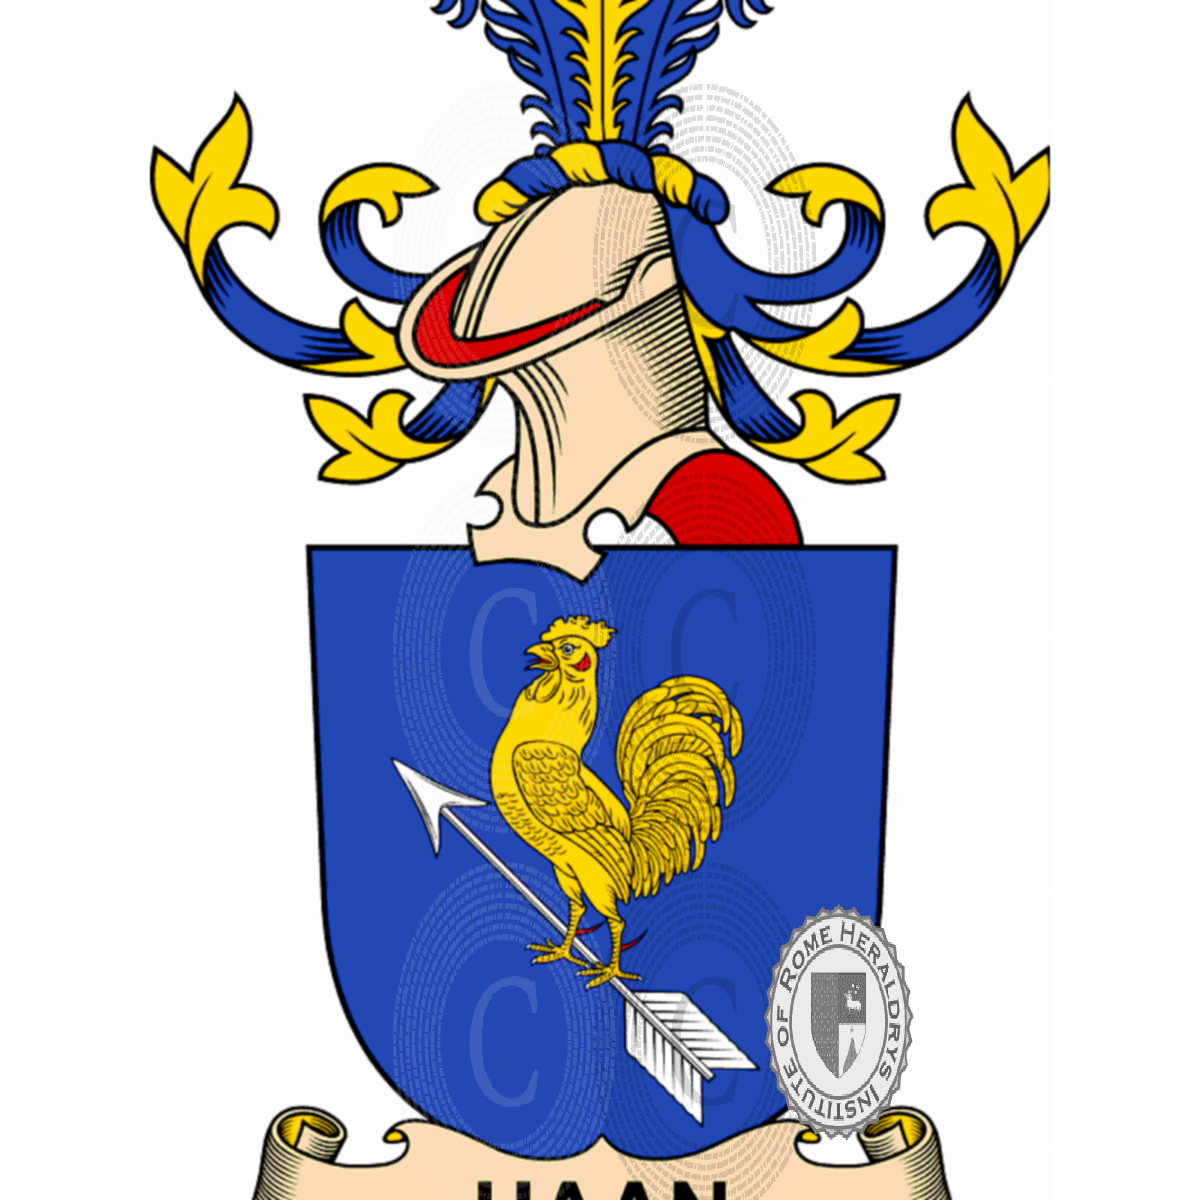 haan-family-heraldry-genealogy-coat-of-arms-haan